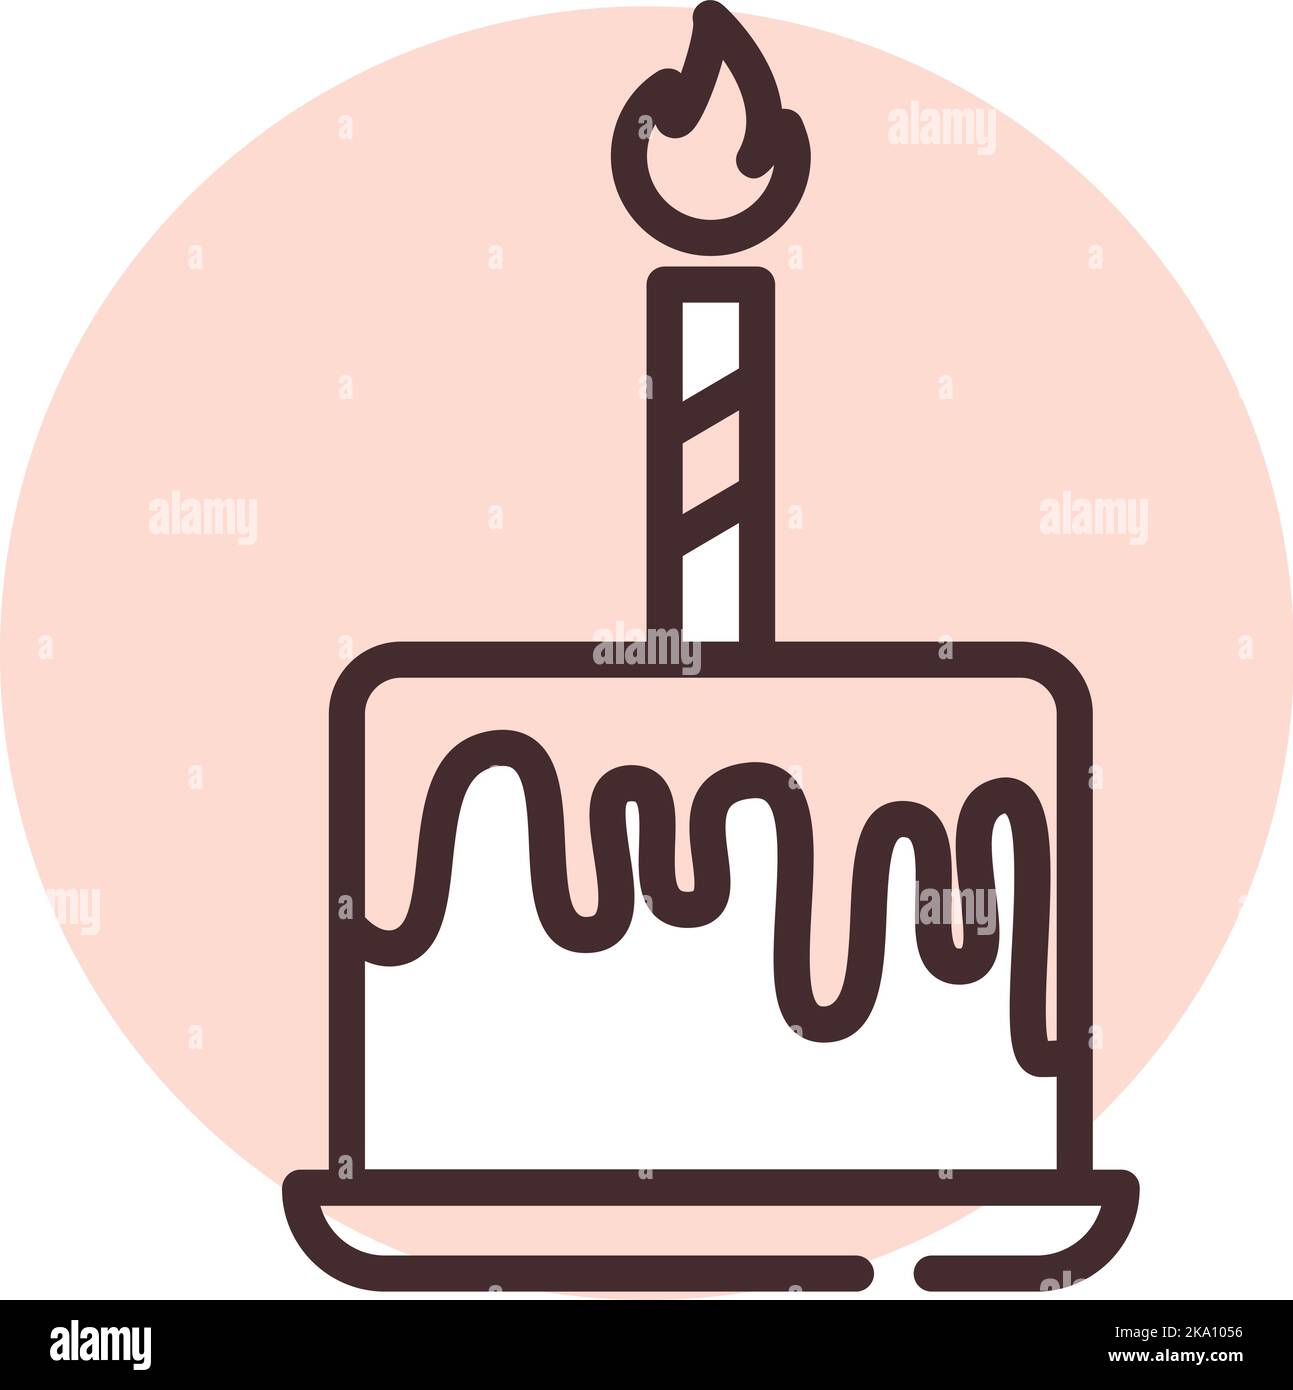 Geburtstagskuchen, Illustration oder Symbol, Vektor auf weißem Hintergrund. Stock Vektor